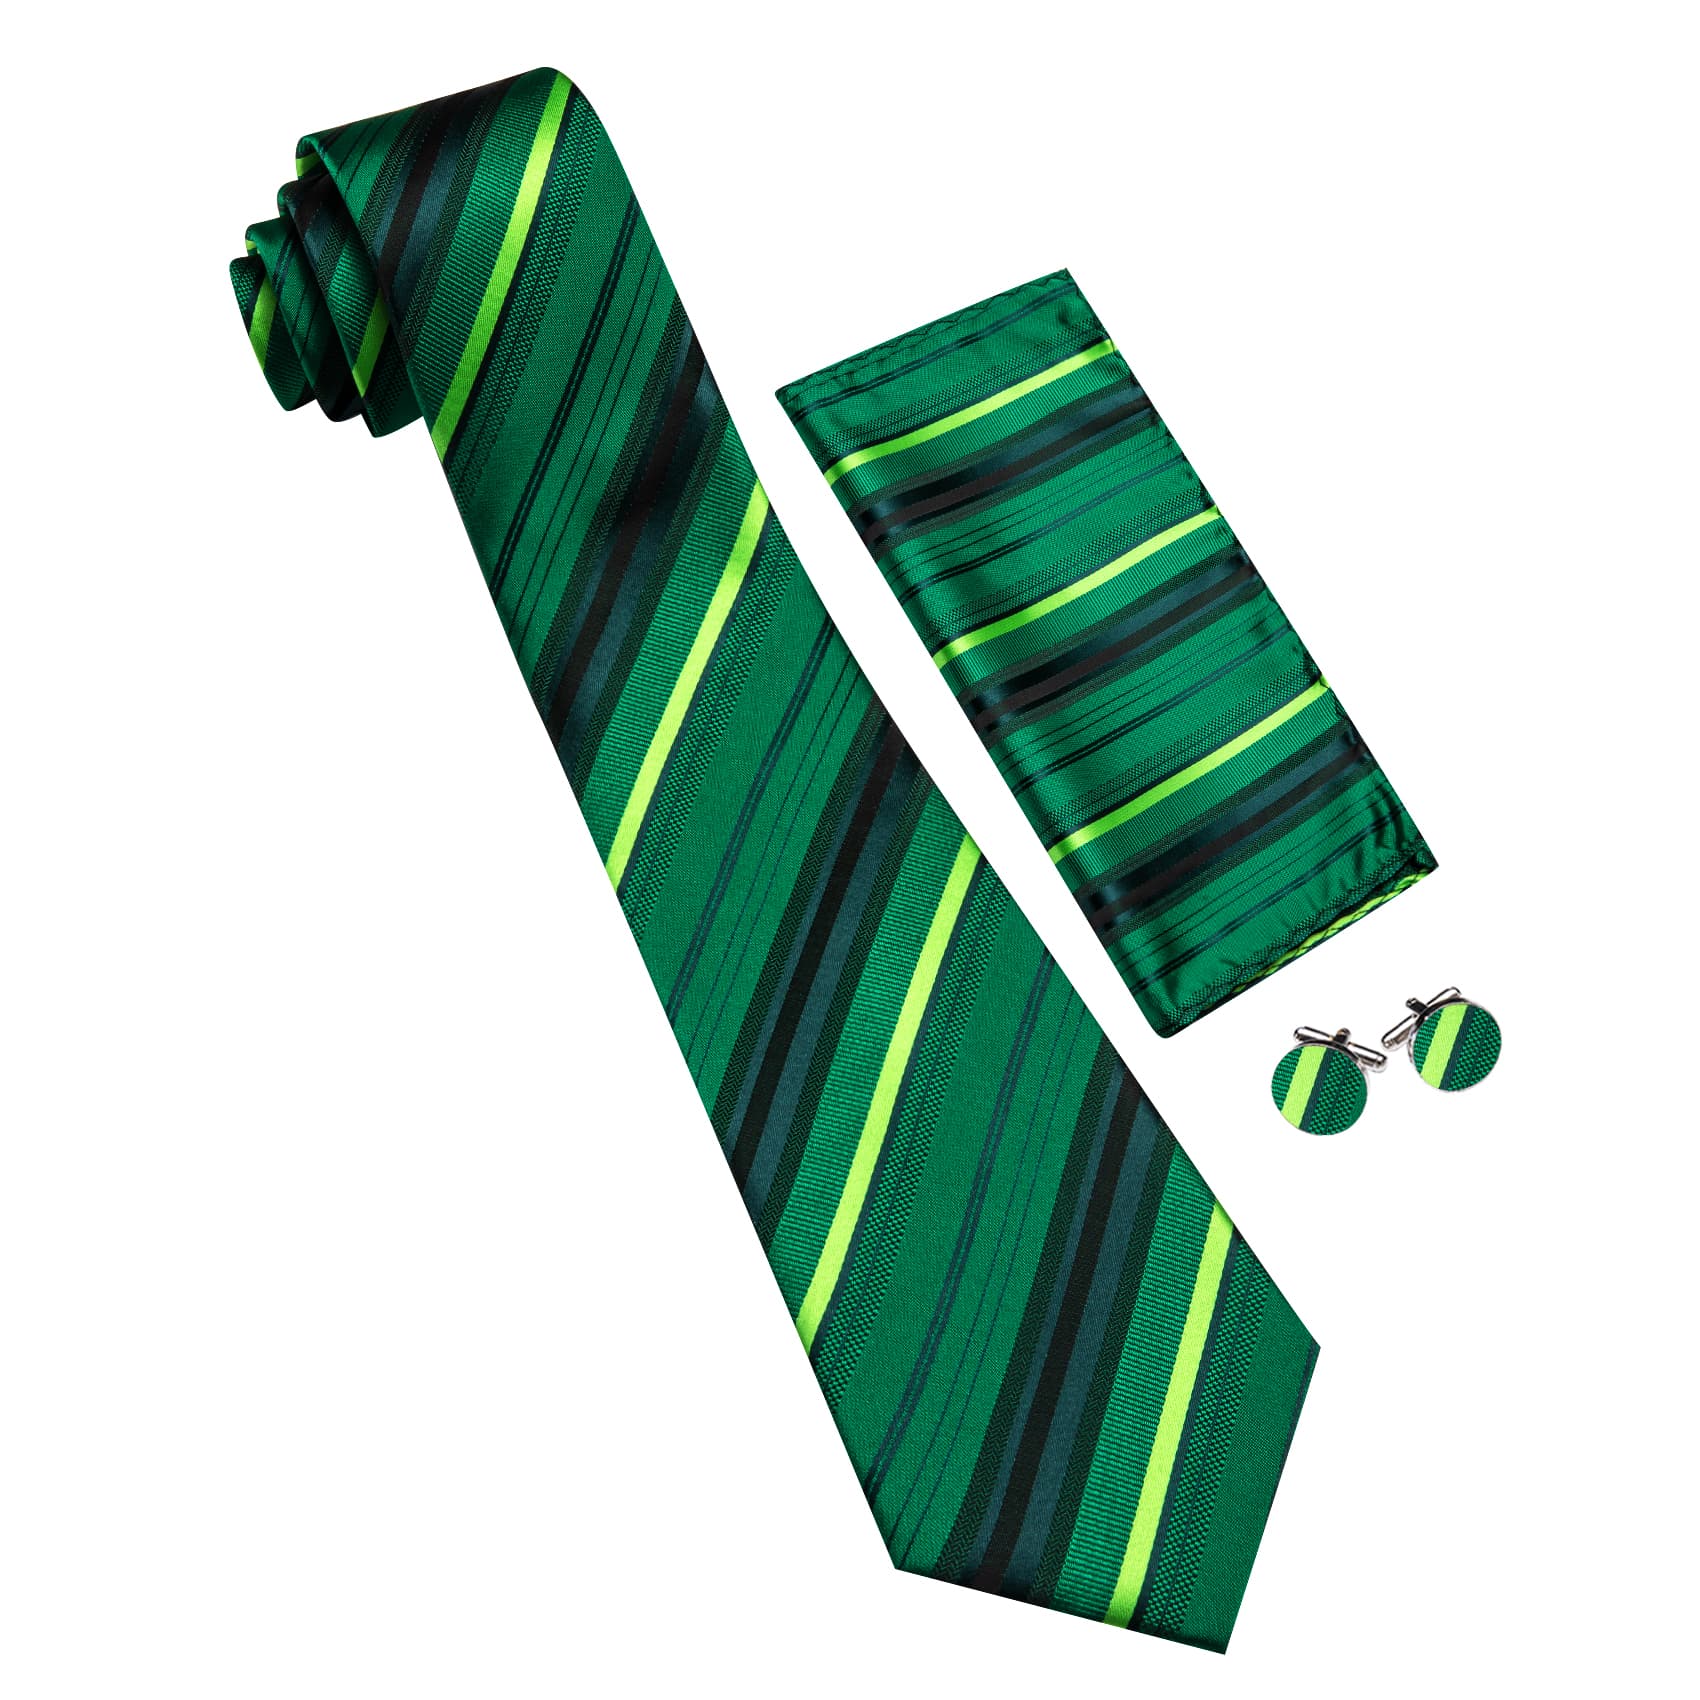 black suit green tie